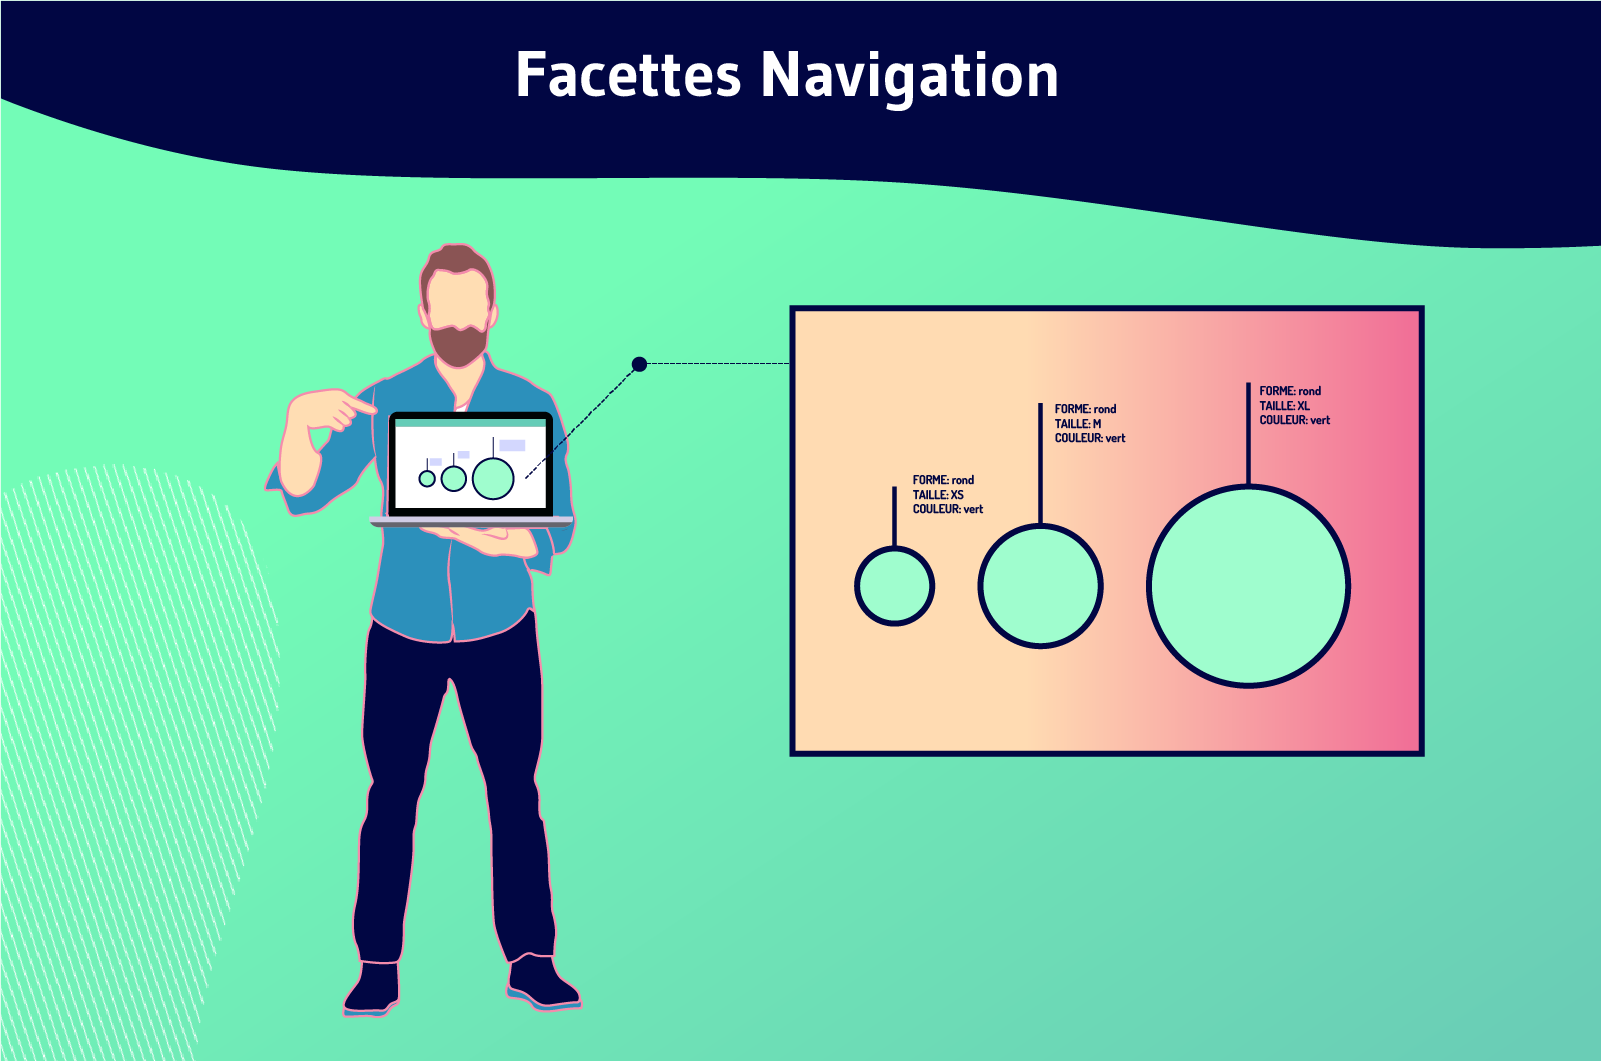 Faceted navigation (1)